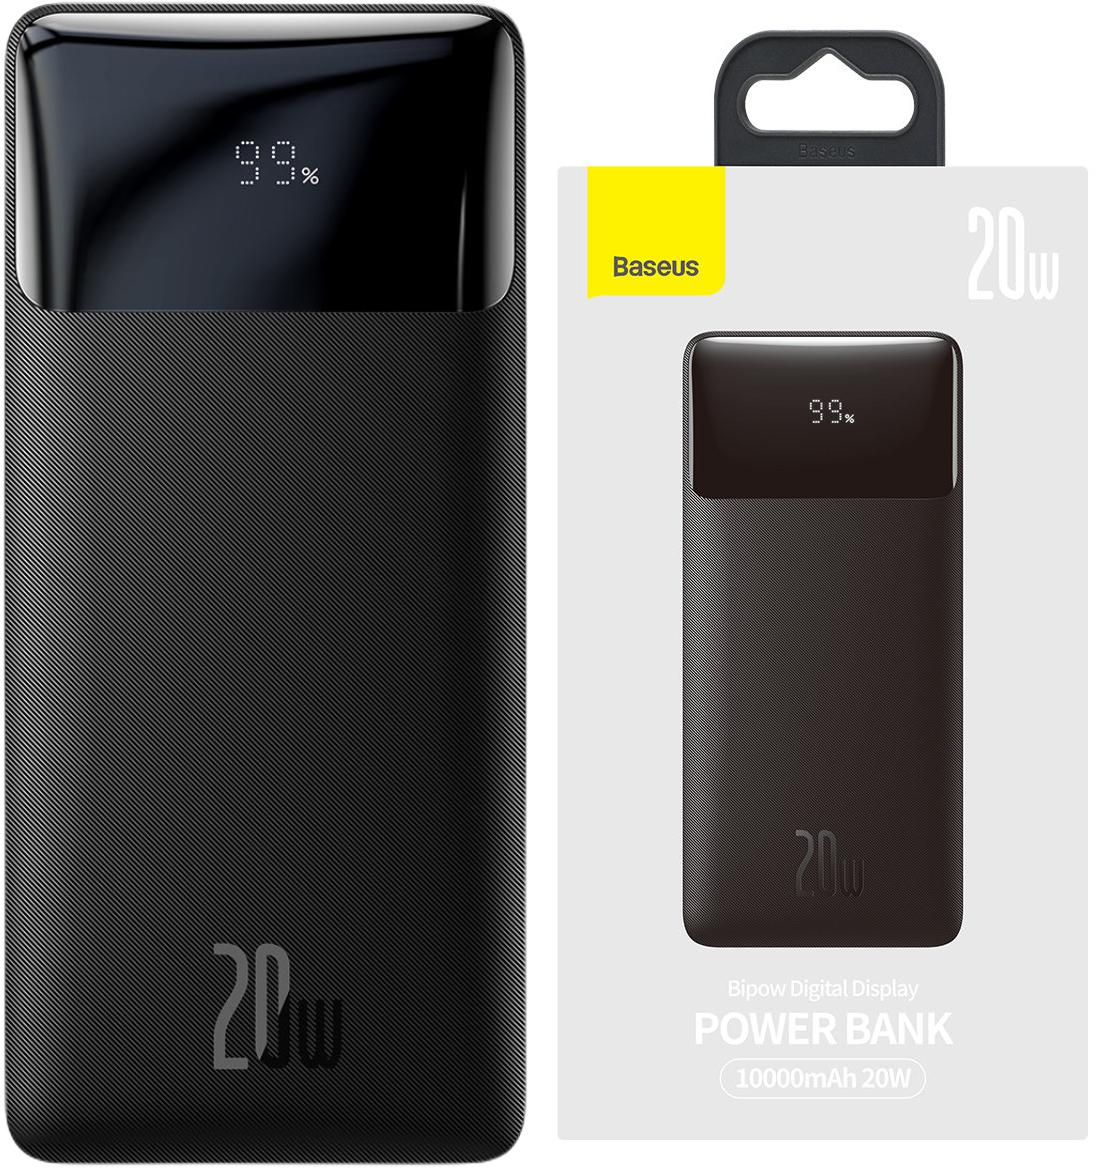 Baseus Bipow powerbank z szybkim ładowaniem 10000mAh 20W czarny Overseas Edition + kabel USB-A / Micro USB 0.25m czarny (PPBD050301) - najważniejsze cechy: